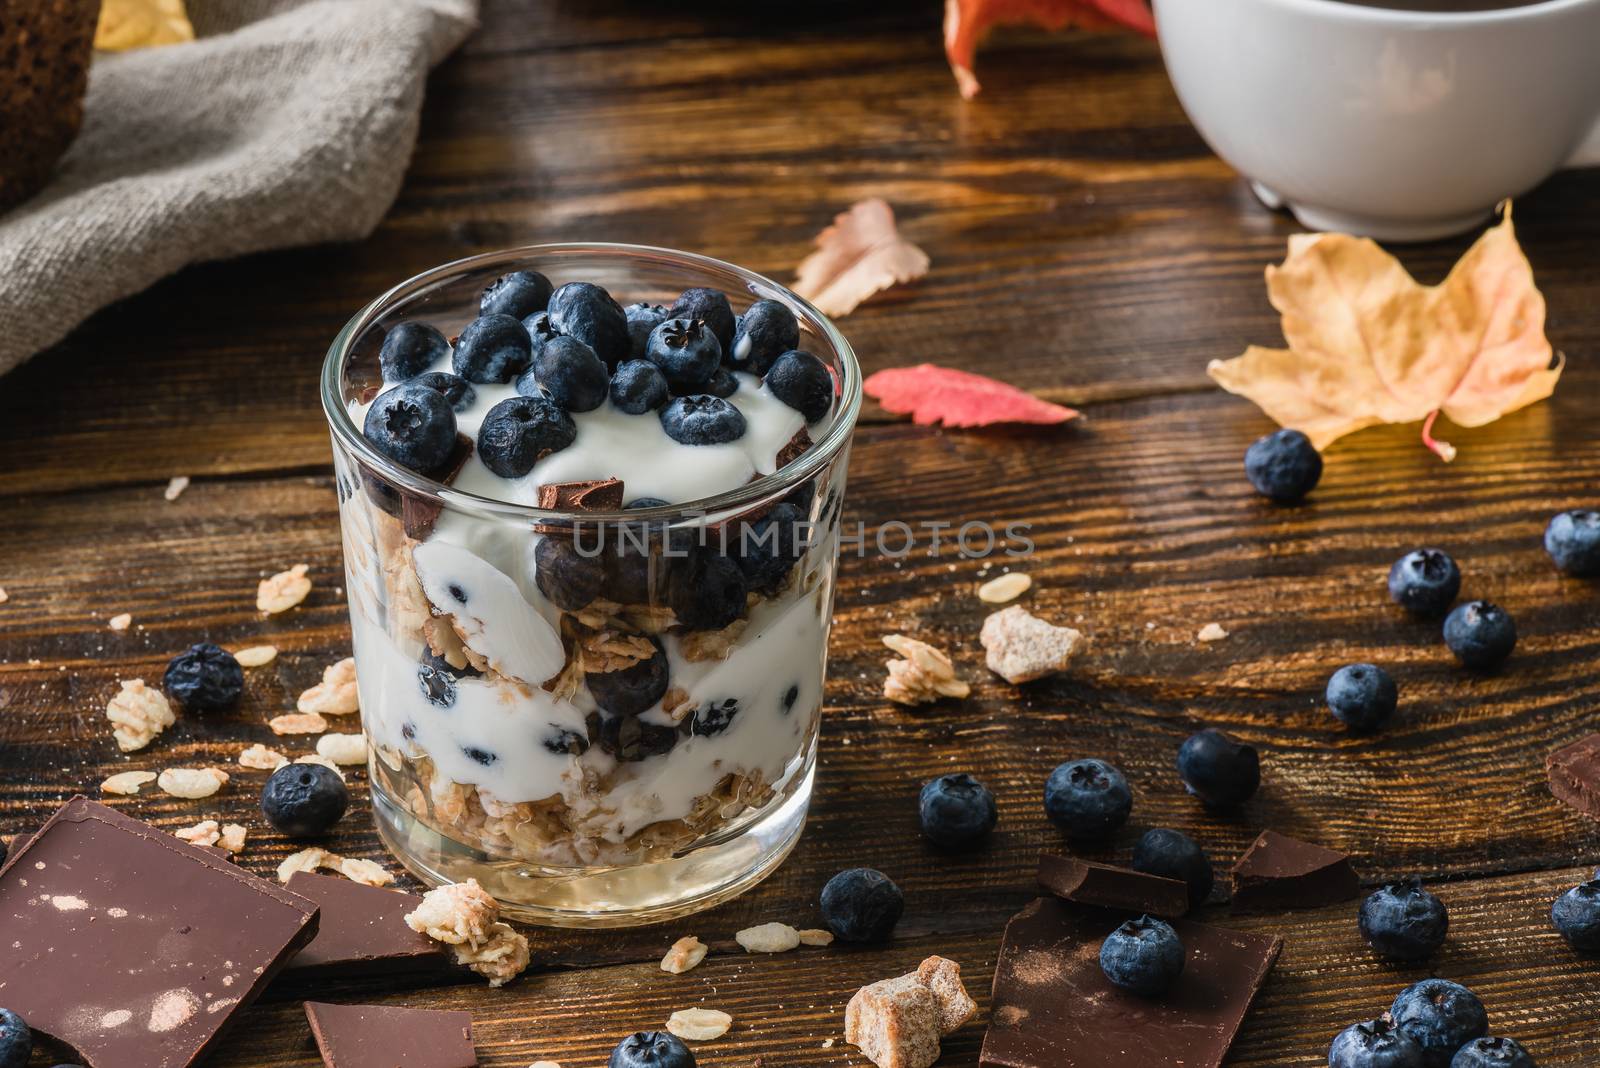 Granola with yogurt and berries by Seva_blsv